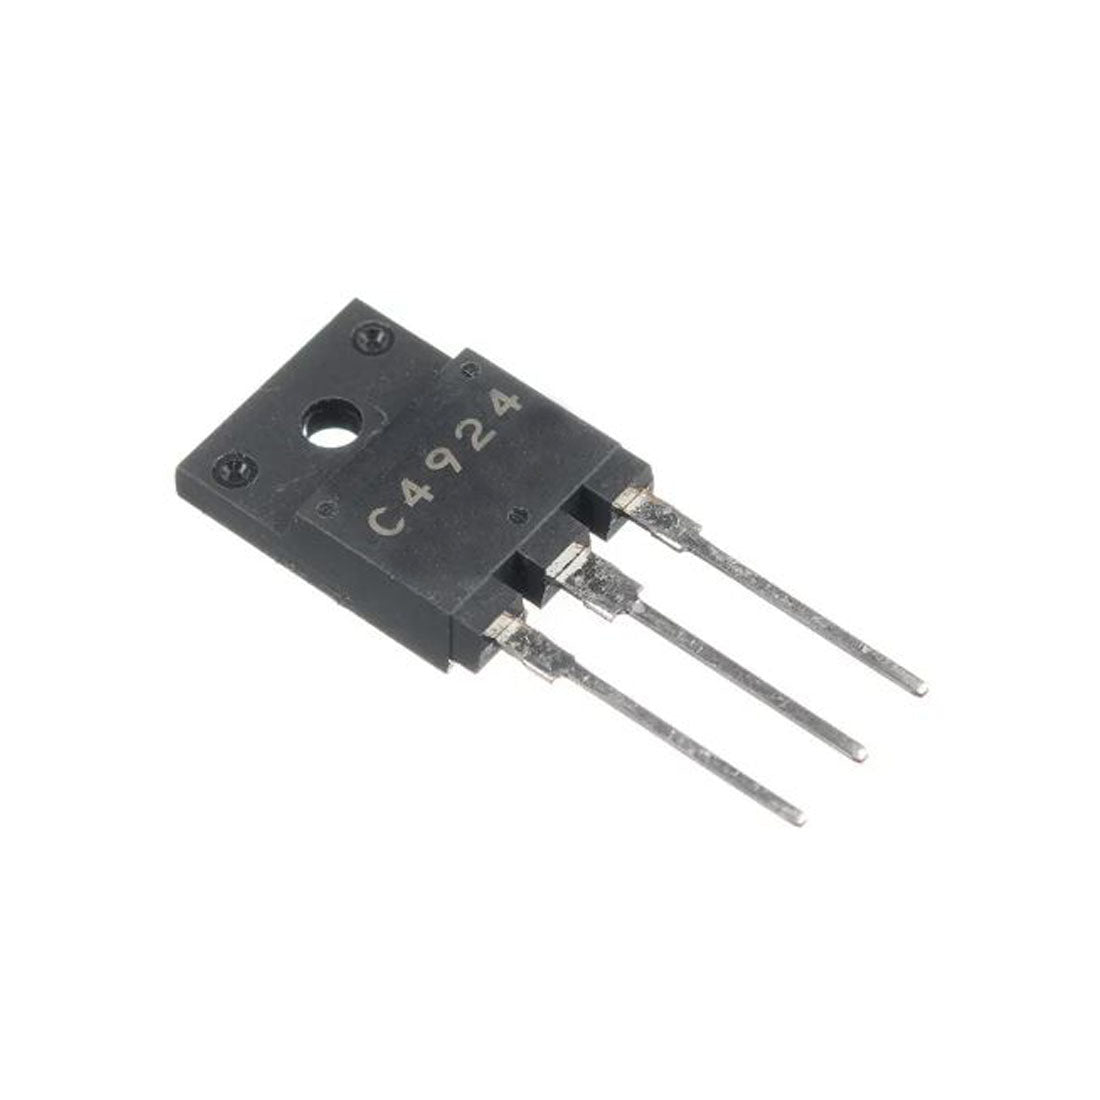 2SC4924 componente elettronico, circuito integrato, transistor, 3 contatti